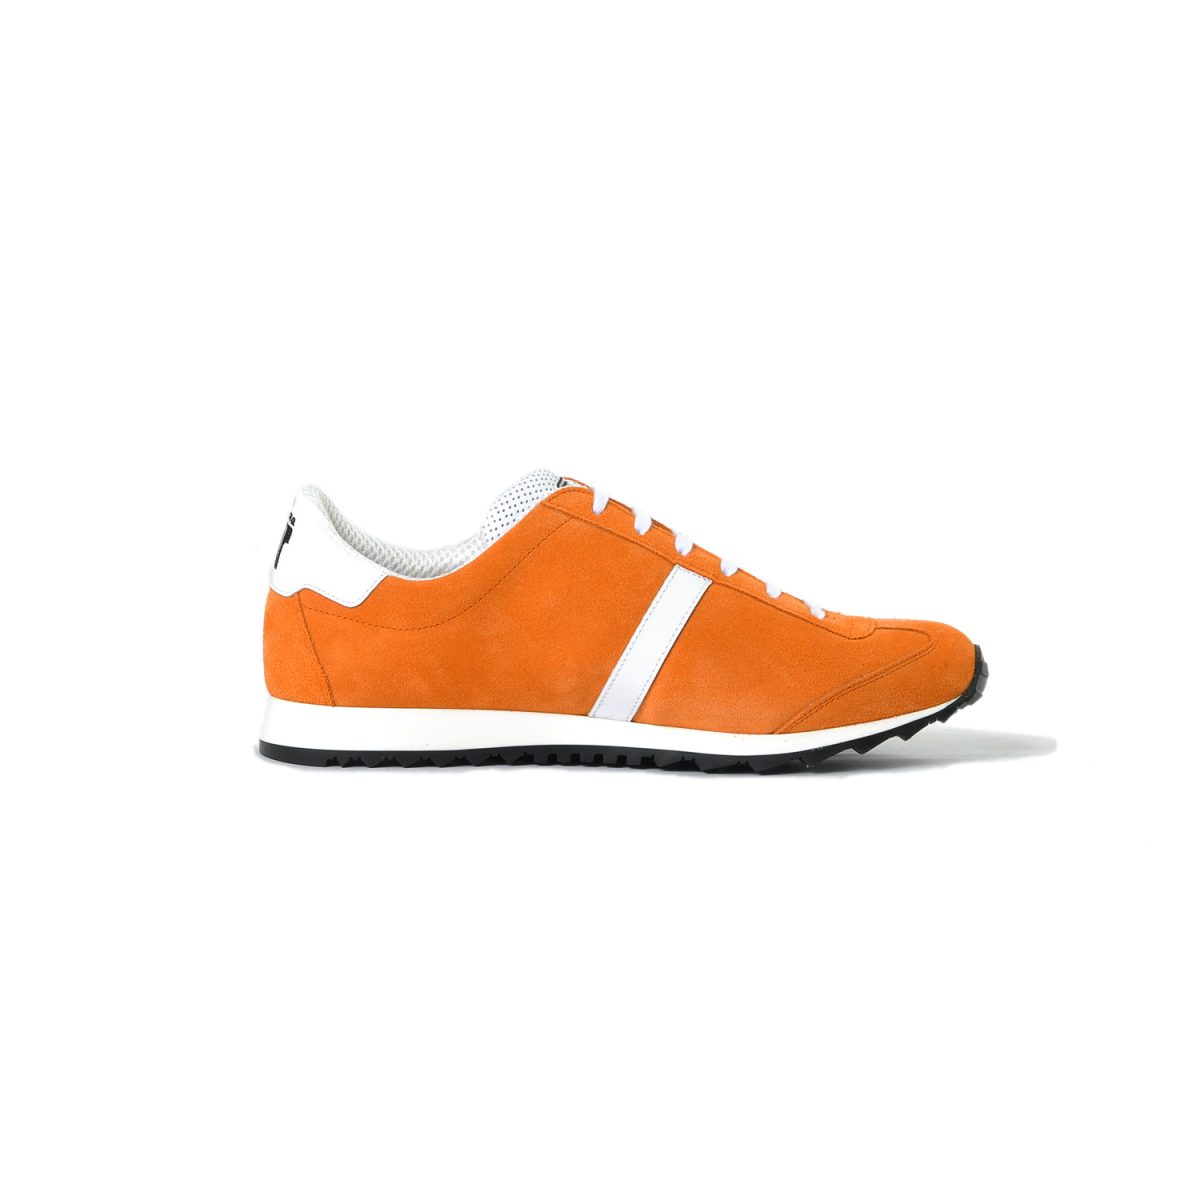 Tisza shoes - Martfű - Orange-white